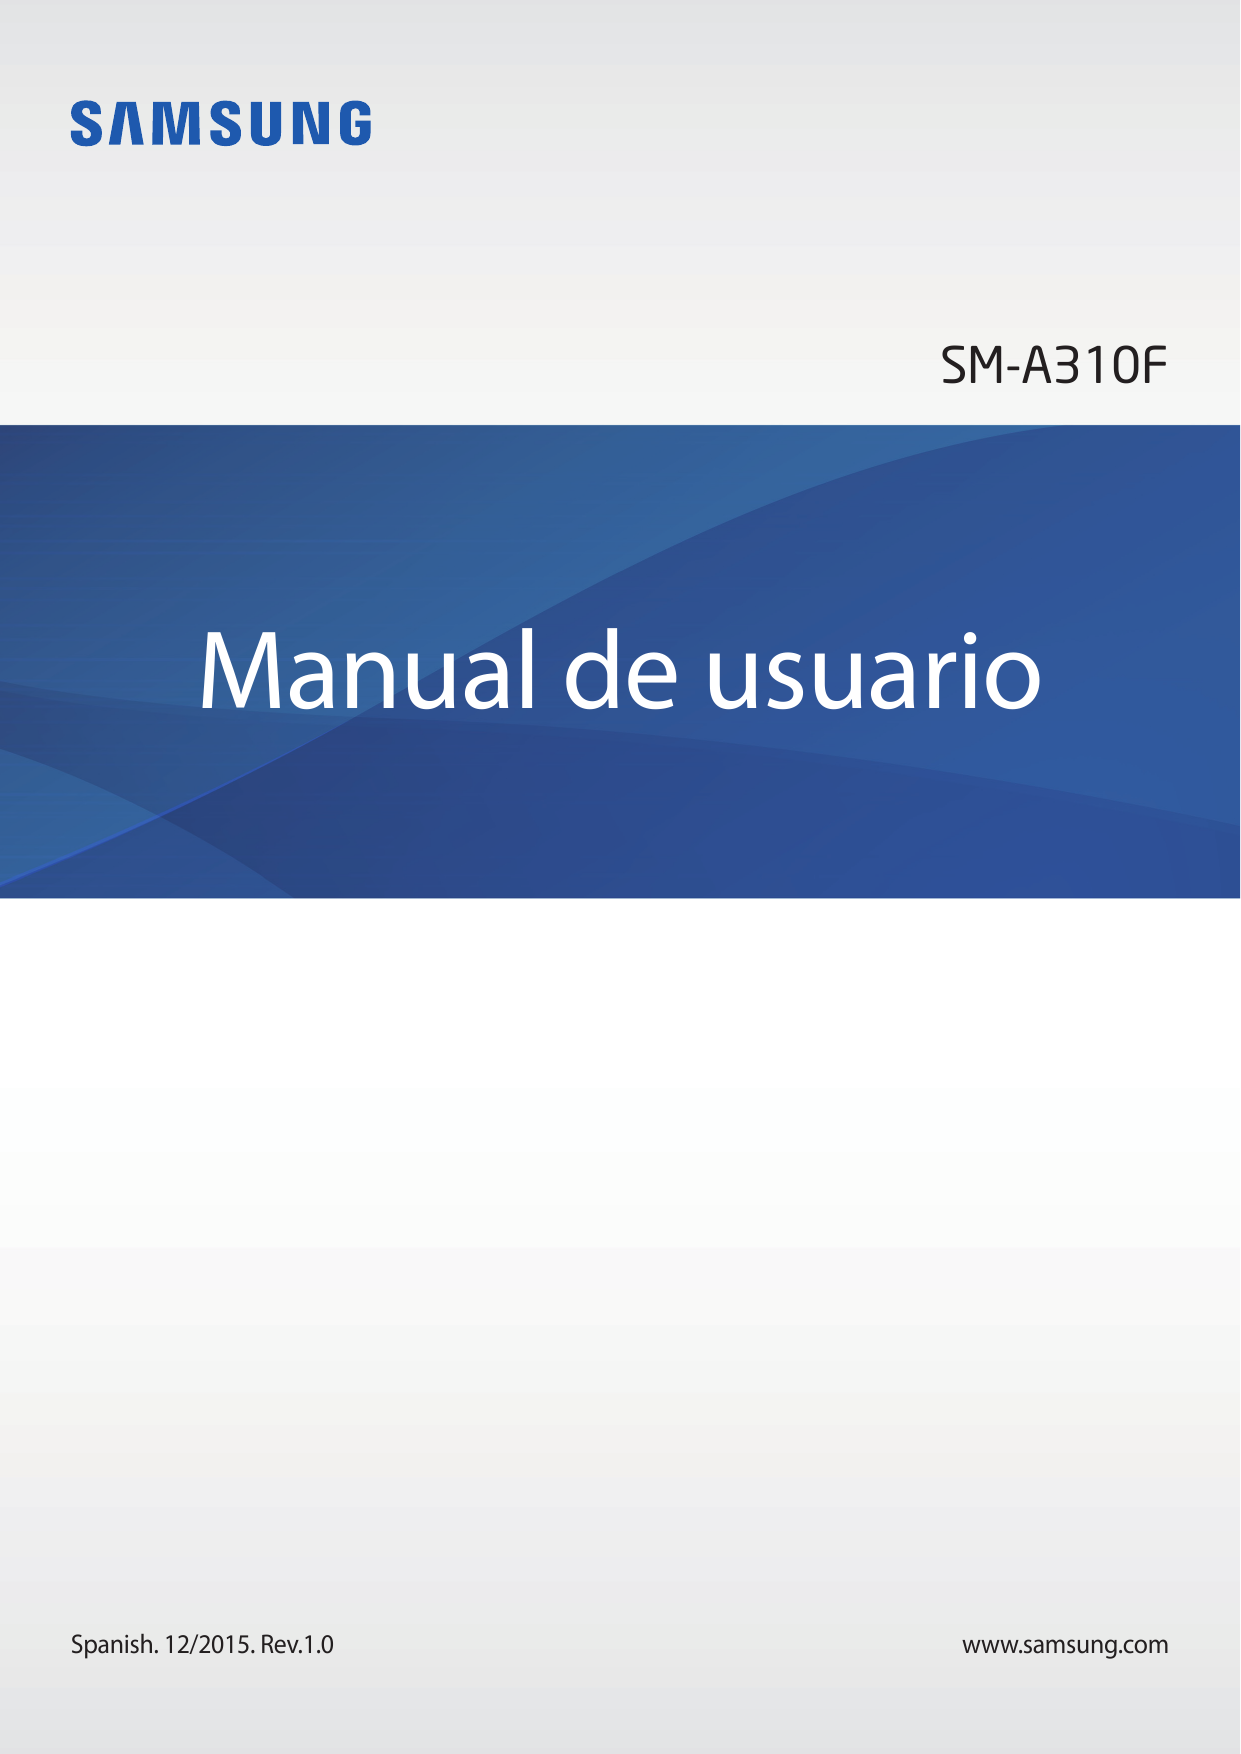 SM-A310FManual de usuarioSpanish. 12/2015. Rev.1.0www.samsung.com